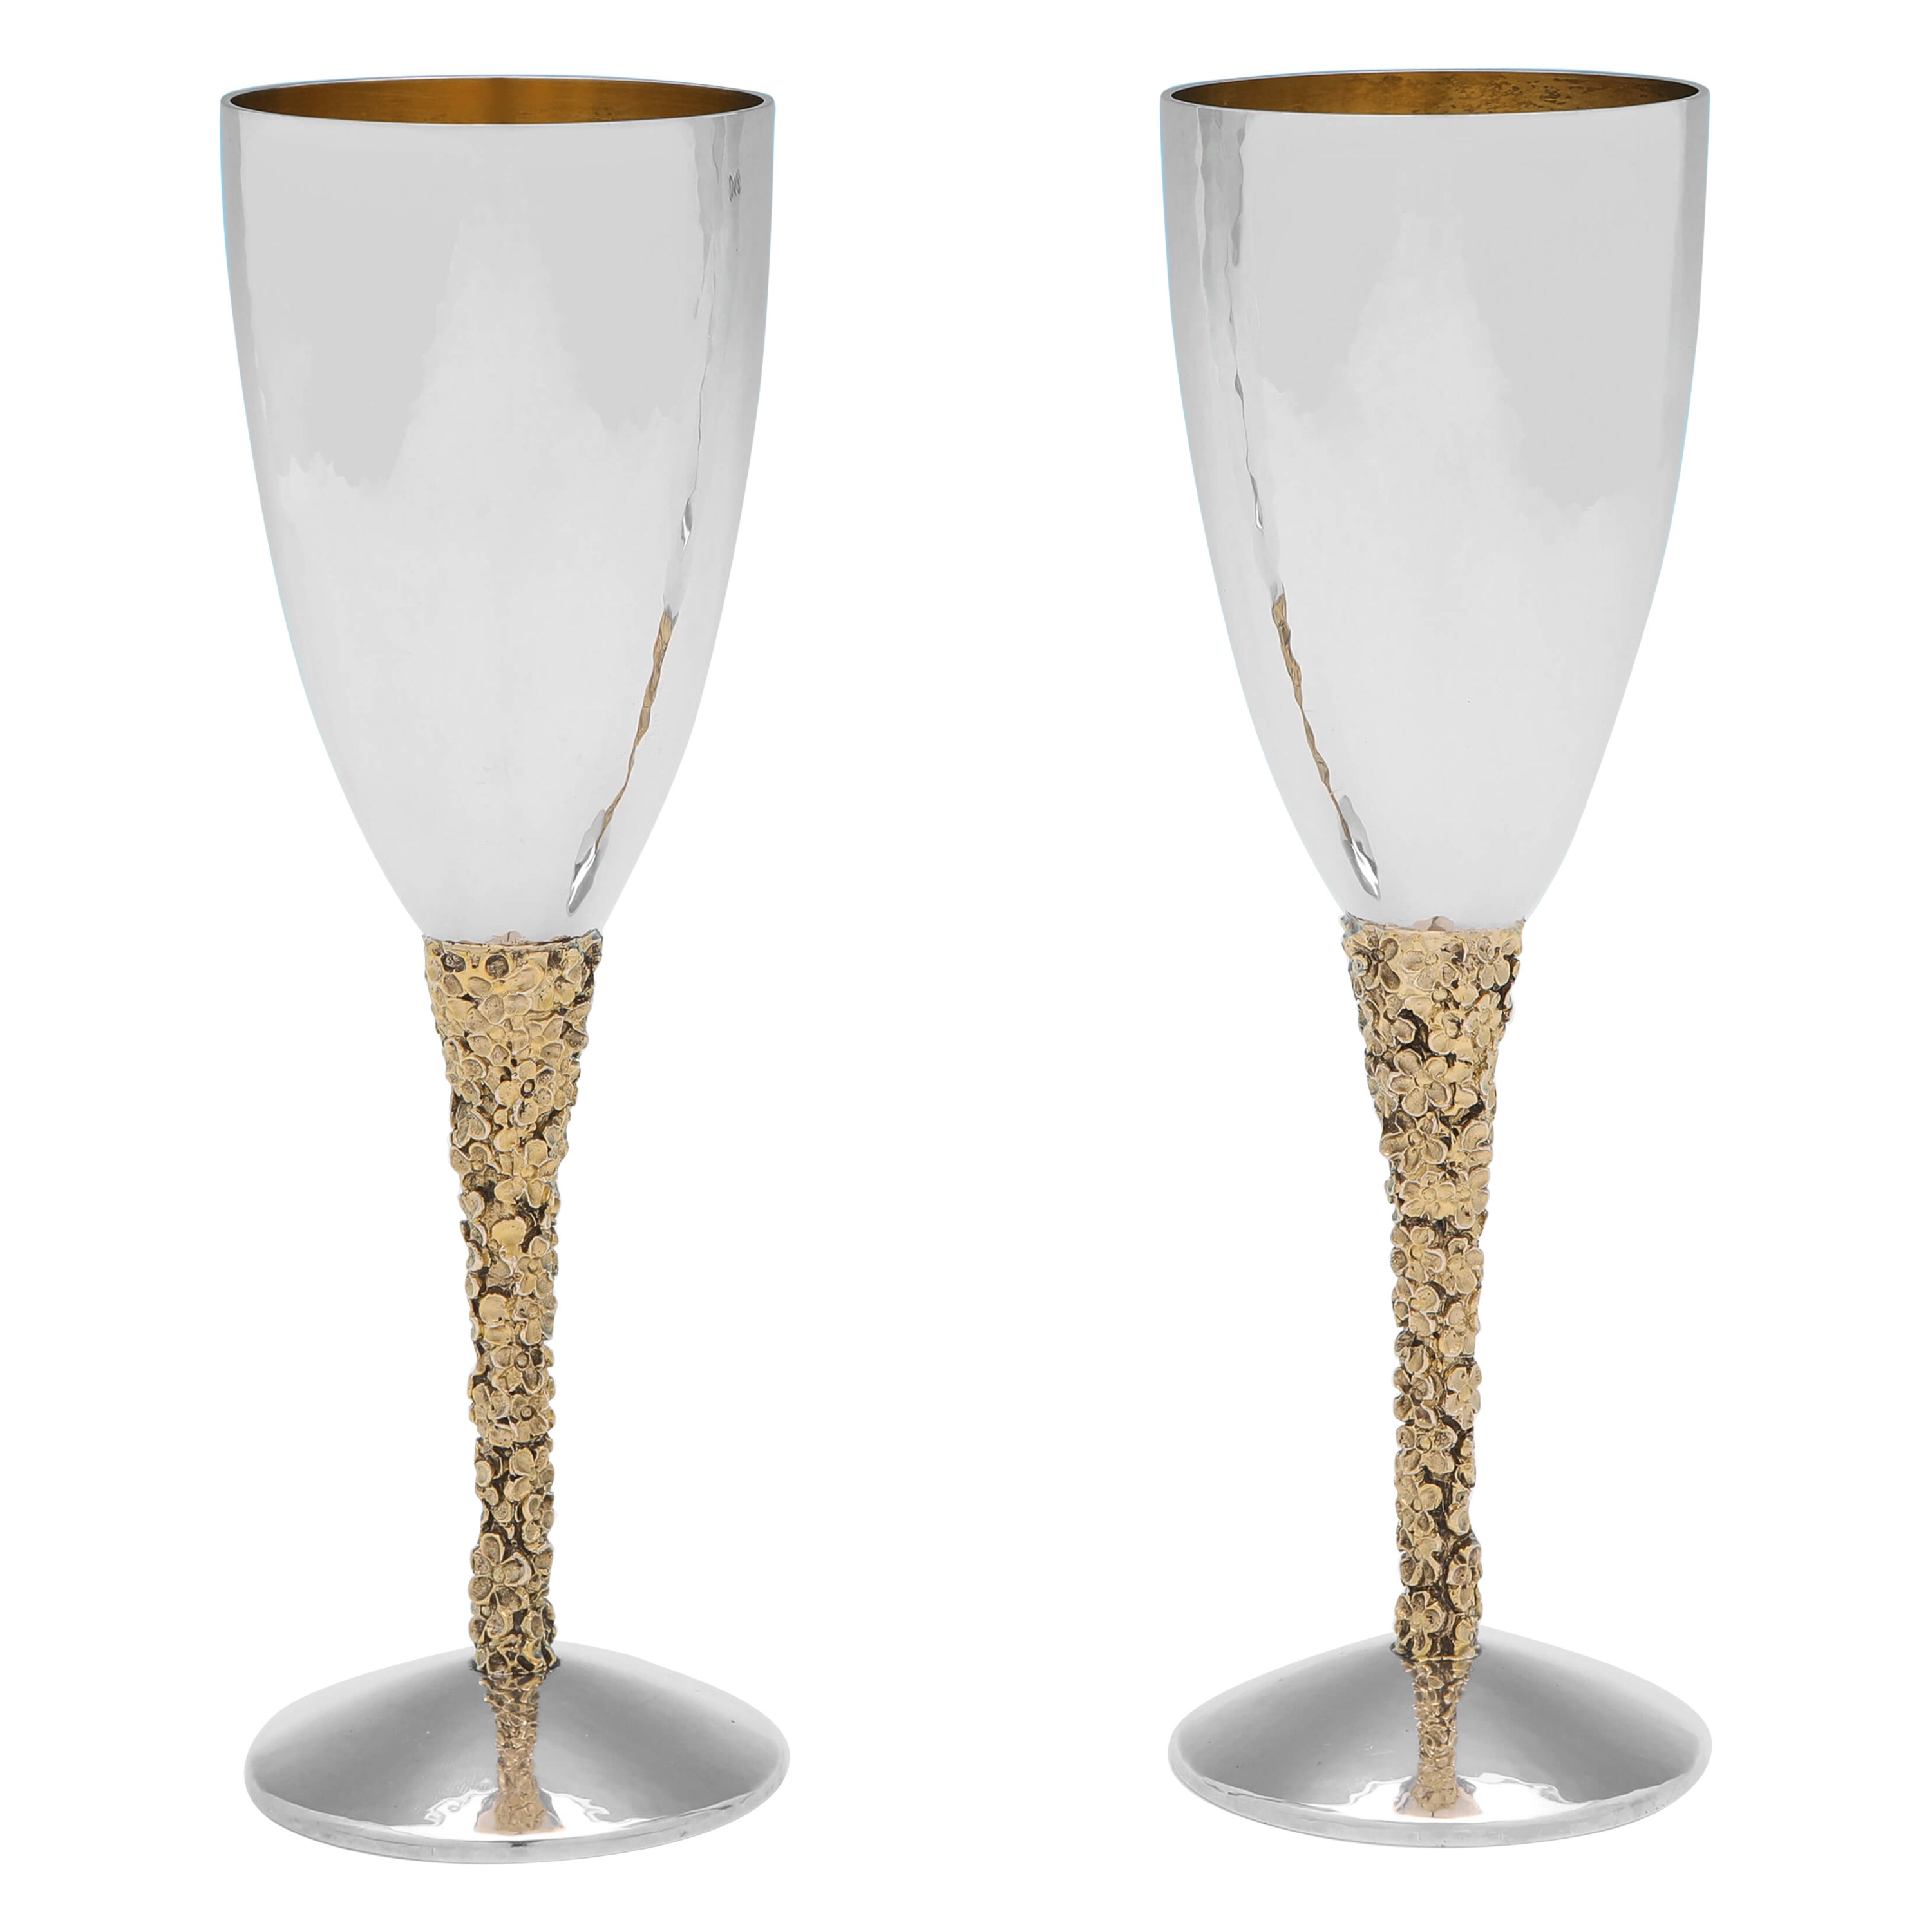 Stuart Devlin - Modernist Design Sterling Silver & Gilt Champagne Flutes - 1977